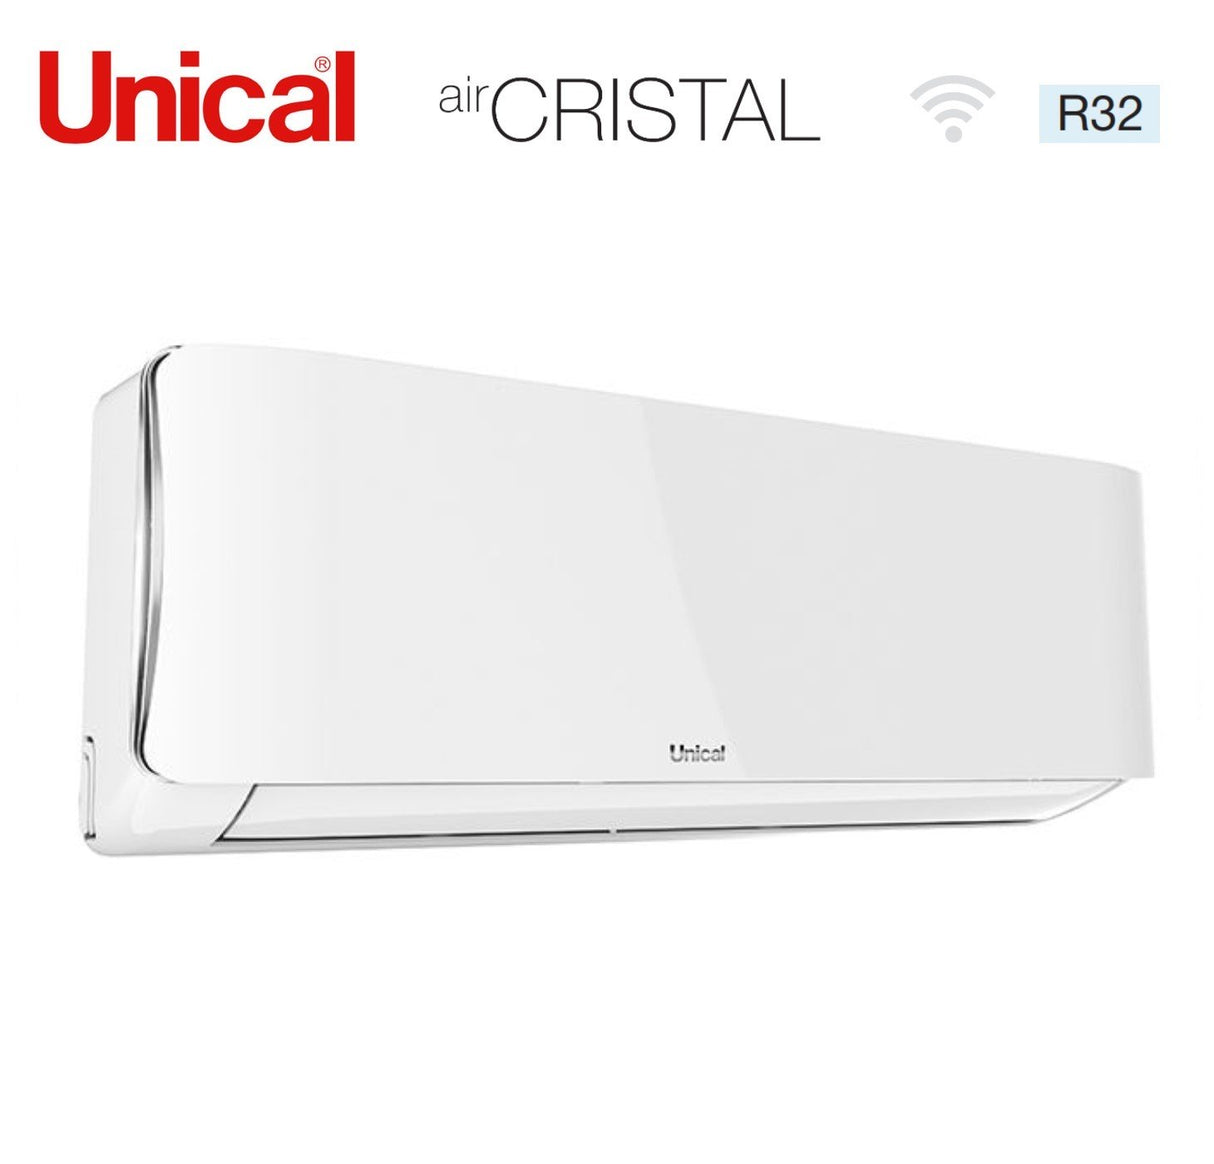 immagine-3-unical-climatizzatore-condizionatore-unical-quadri-split-inverter-serie-air-cristal-10131318-con-kmx4-36he-r-32-wi-fi-optional-10000130001300018000